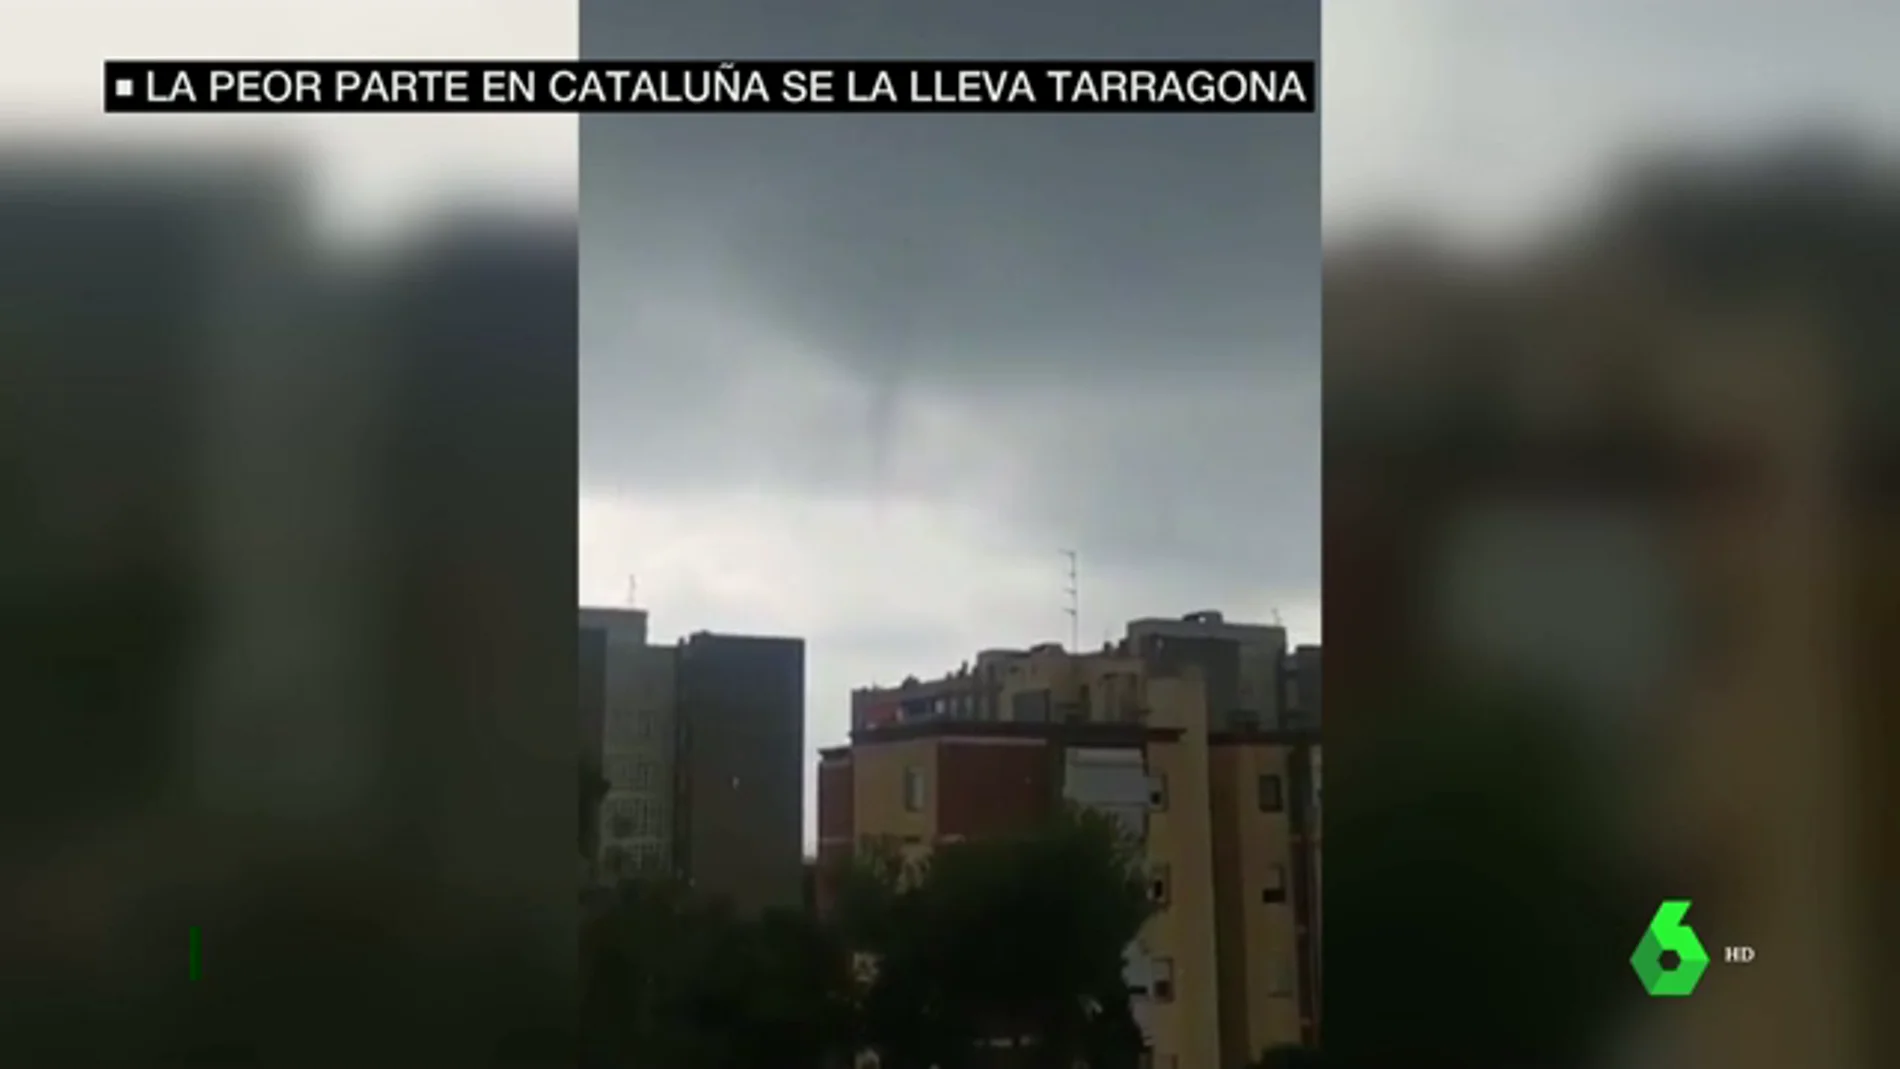 Varios tornados y descensos extremos en las temperaturas: Tarragona se lleva la peor parte de la gota fría en Cataluña